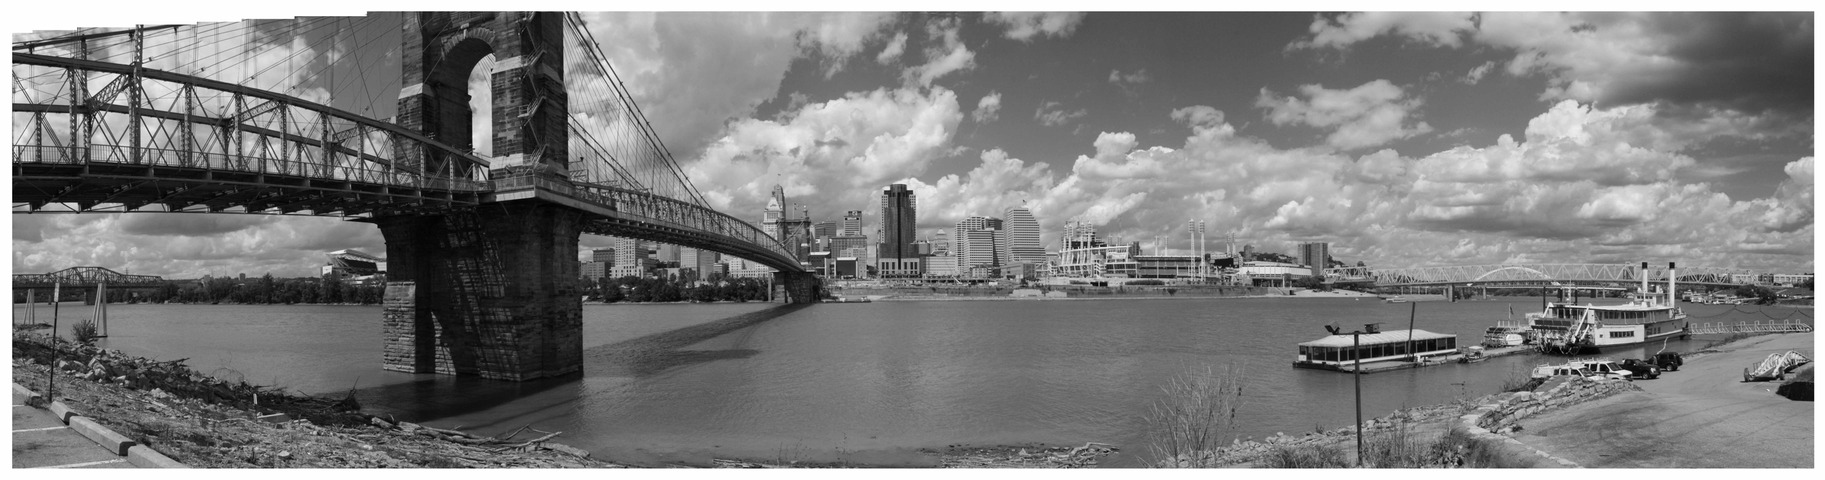 Cincinnati, OH: Roebling Bridge and Skyline